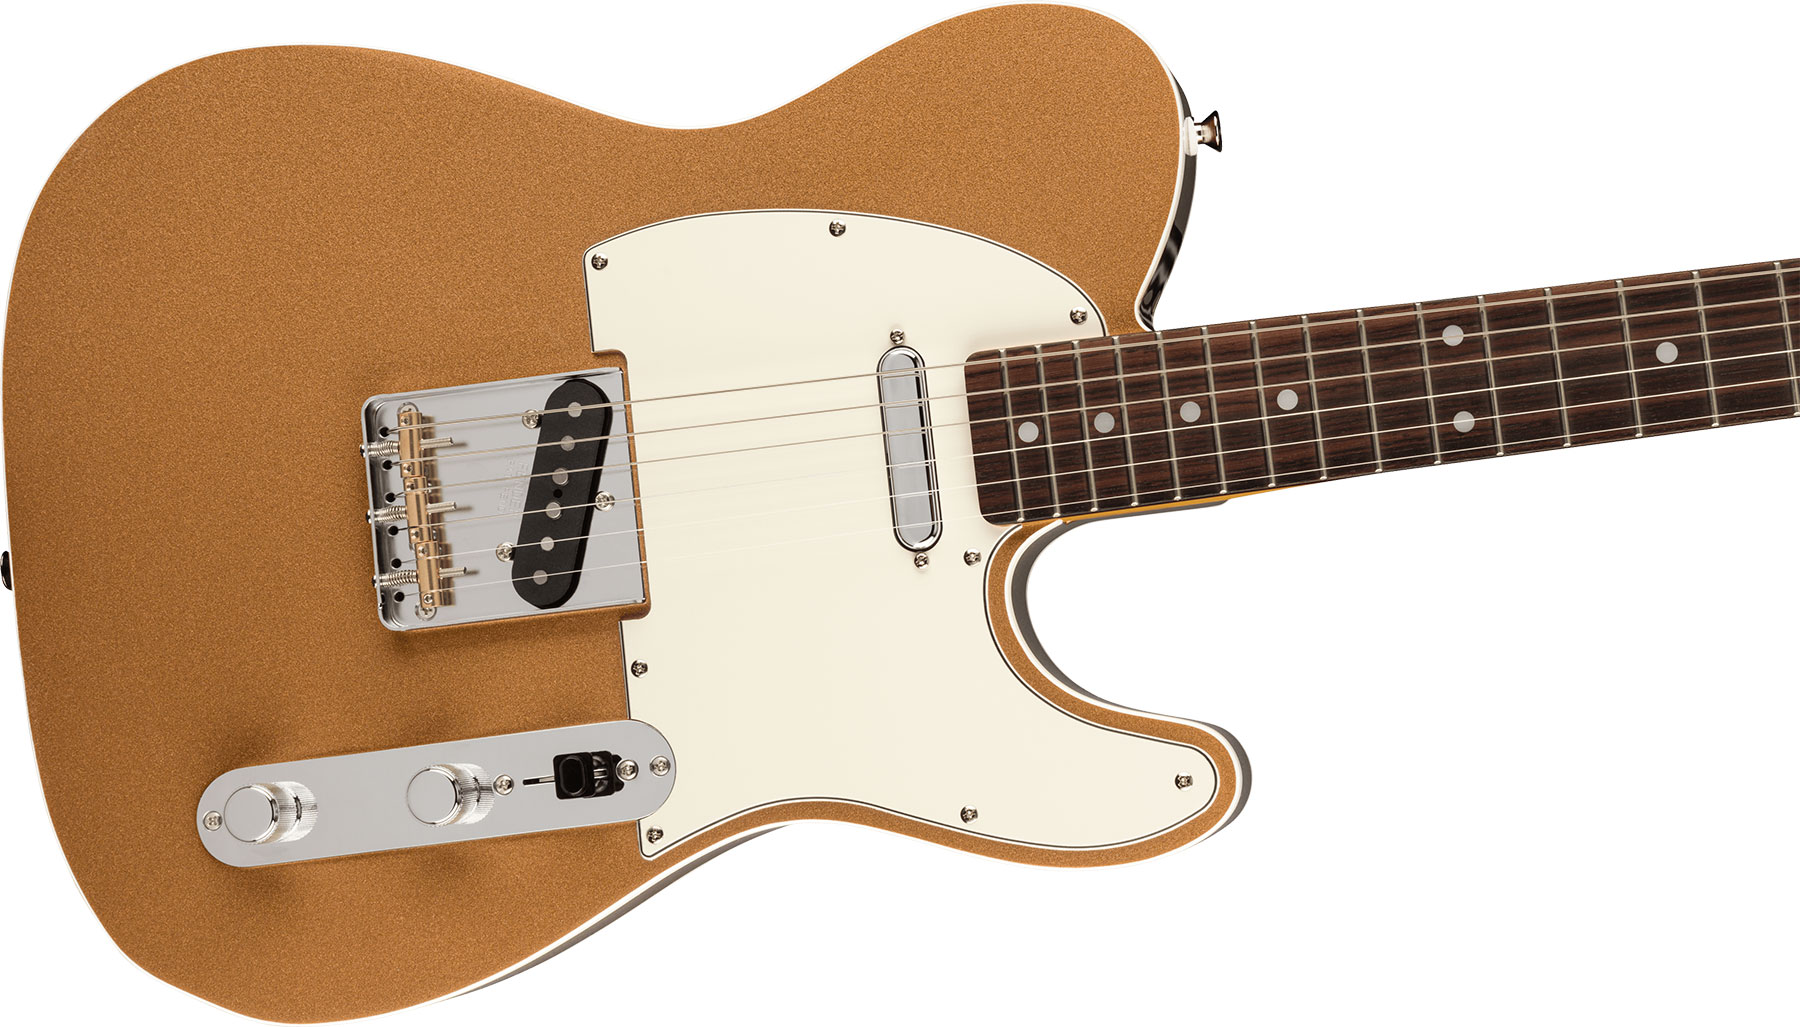 Fender Tele Custom '60s Jv Modified Jap 2s Ht Rw - Firemist Gold - E-Gitarre in Teleform - Variation 2